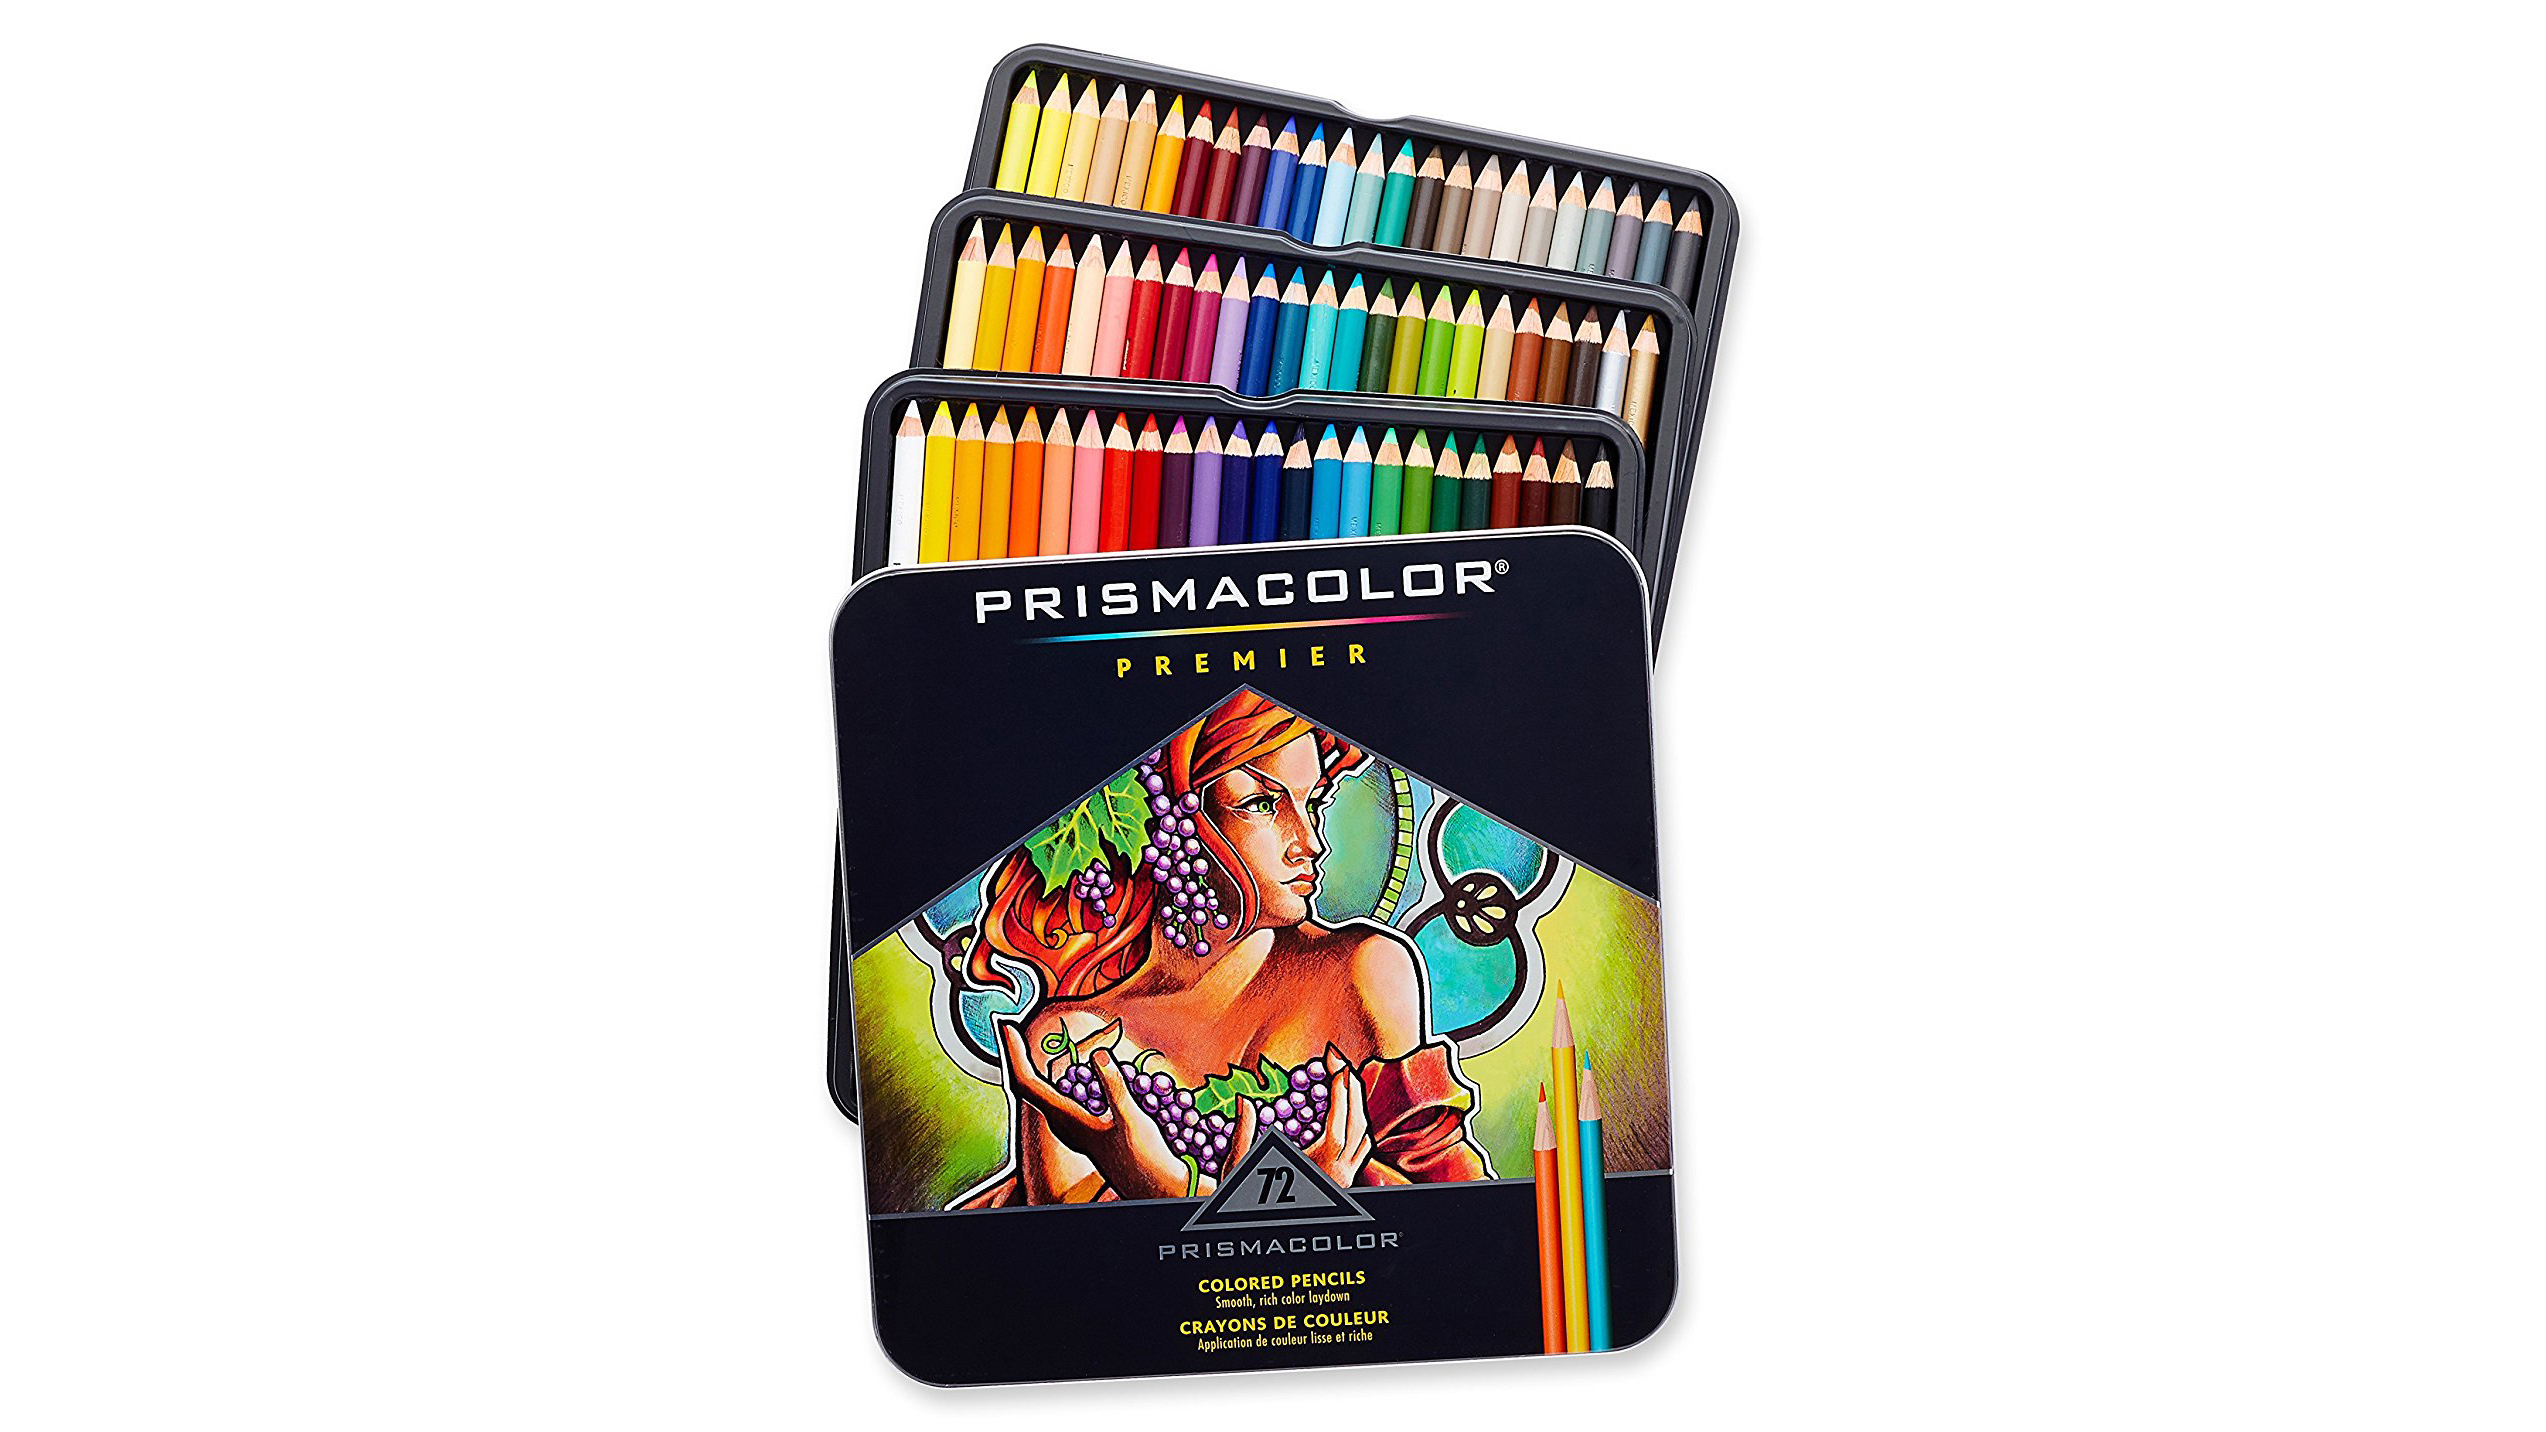 Best pencils: Colourful tins of Prismacolor Premier coloured pencils